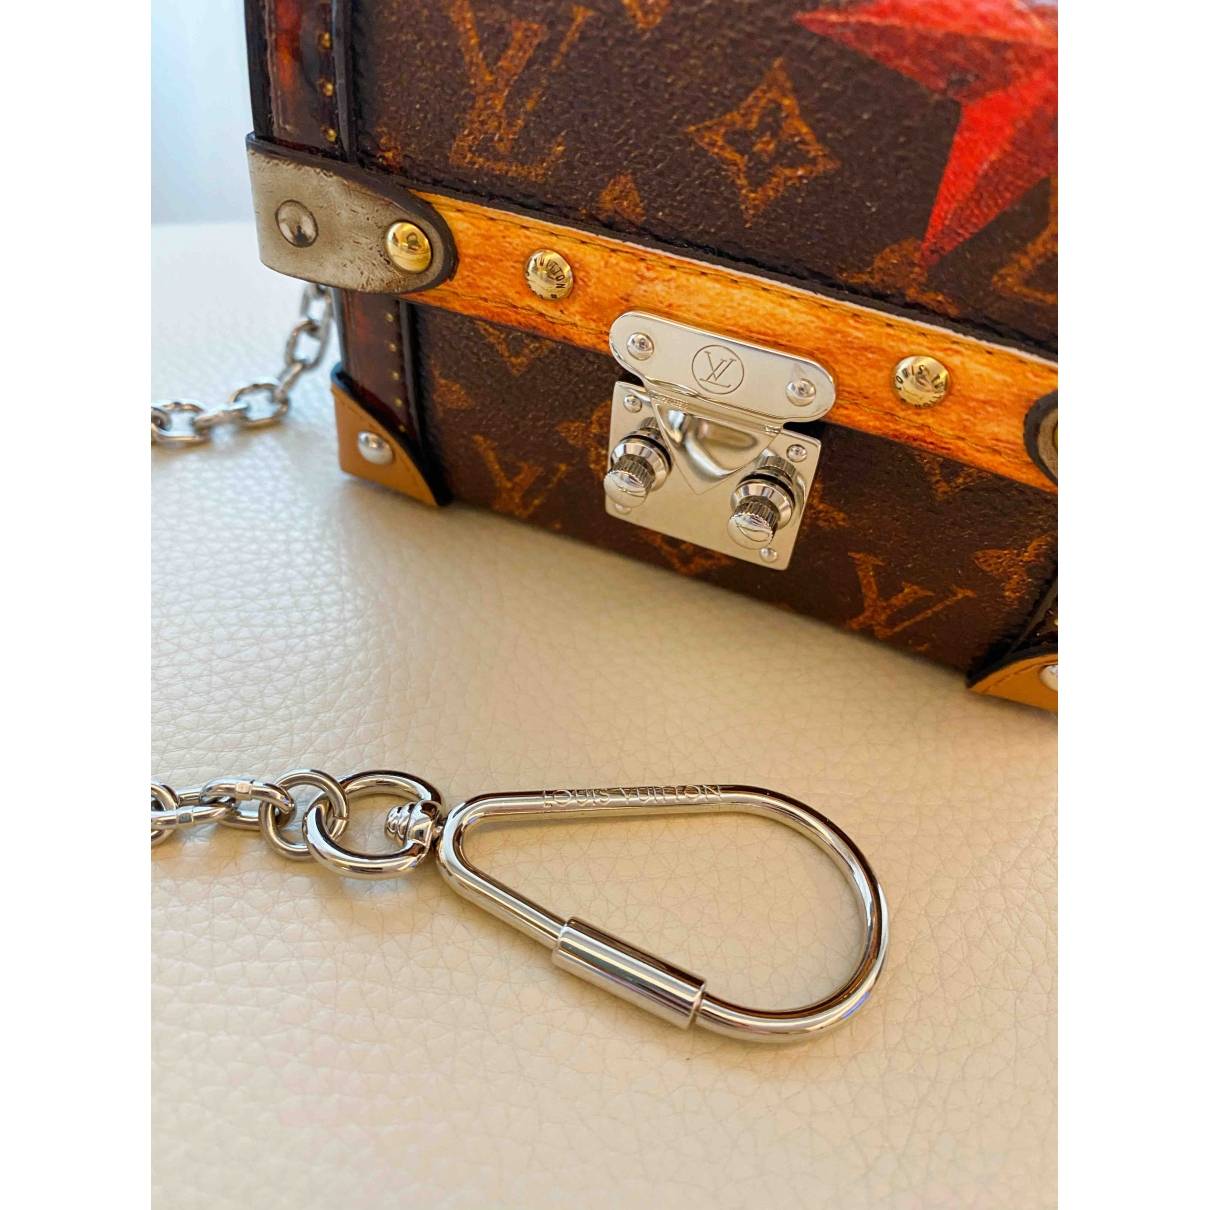 Essential trunk cloth clutch bag Louis Vuitton Brown in Cloth - 31353828